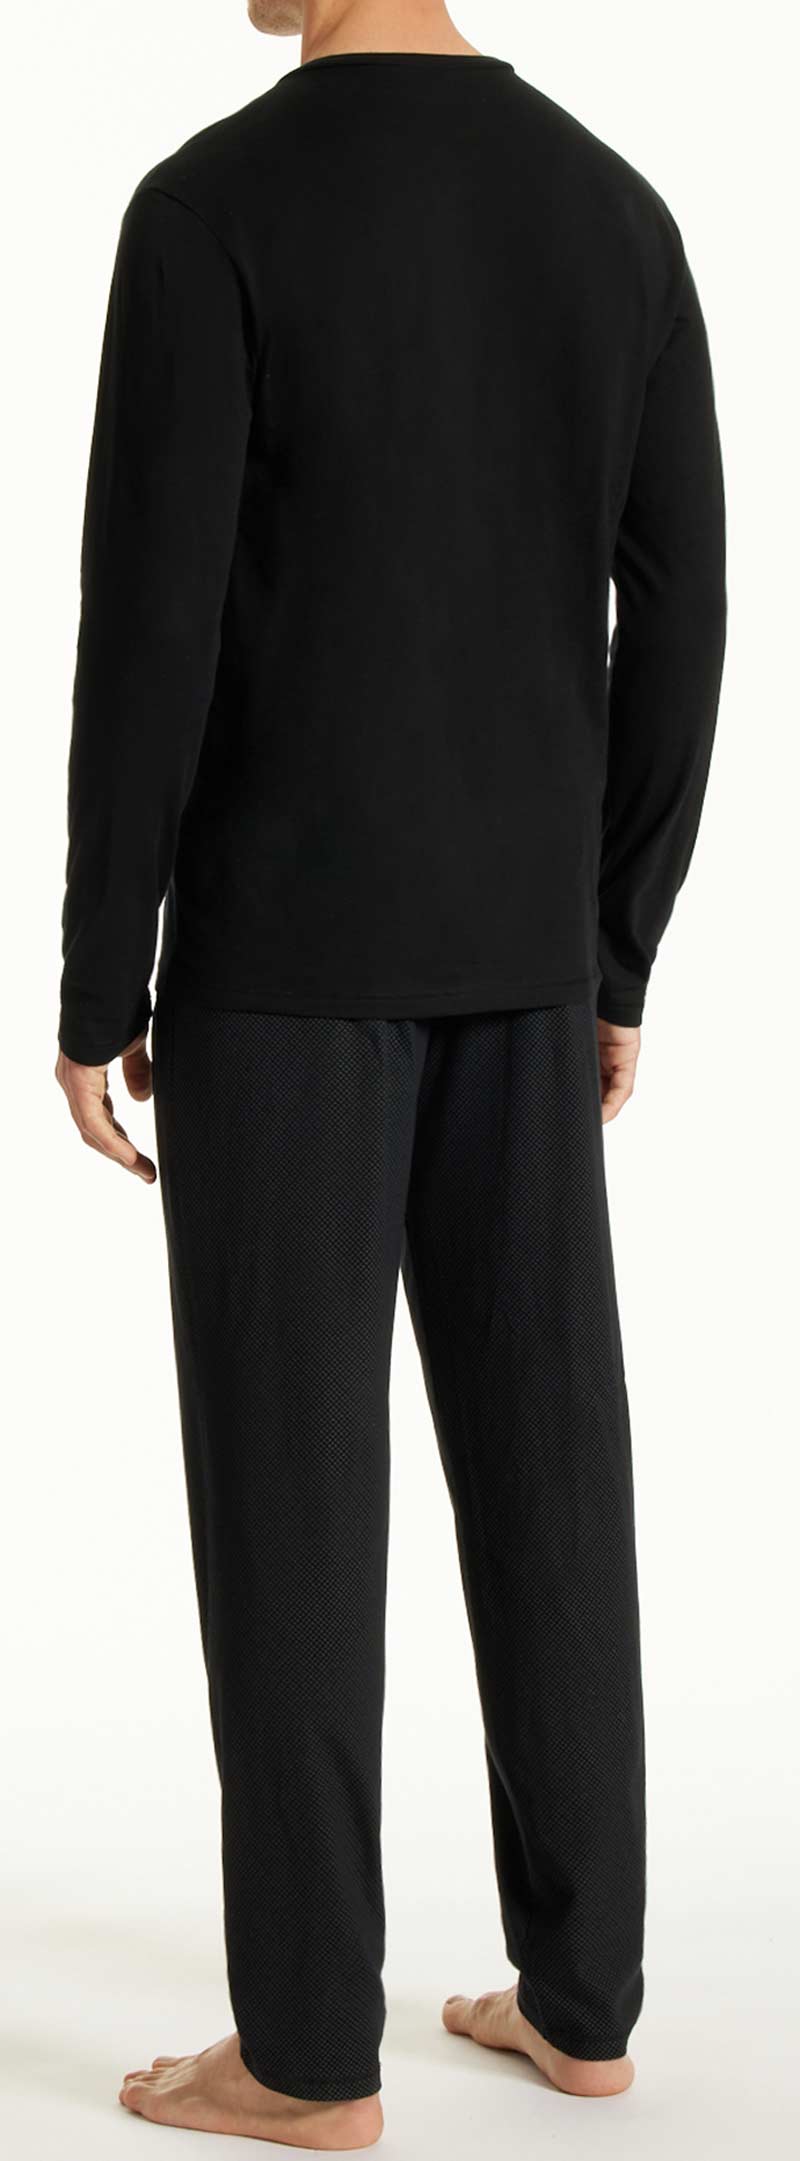 Schiesser pyjama Uncover achterkant zwart 